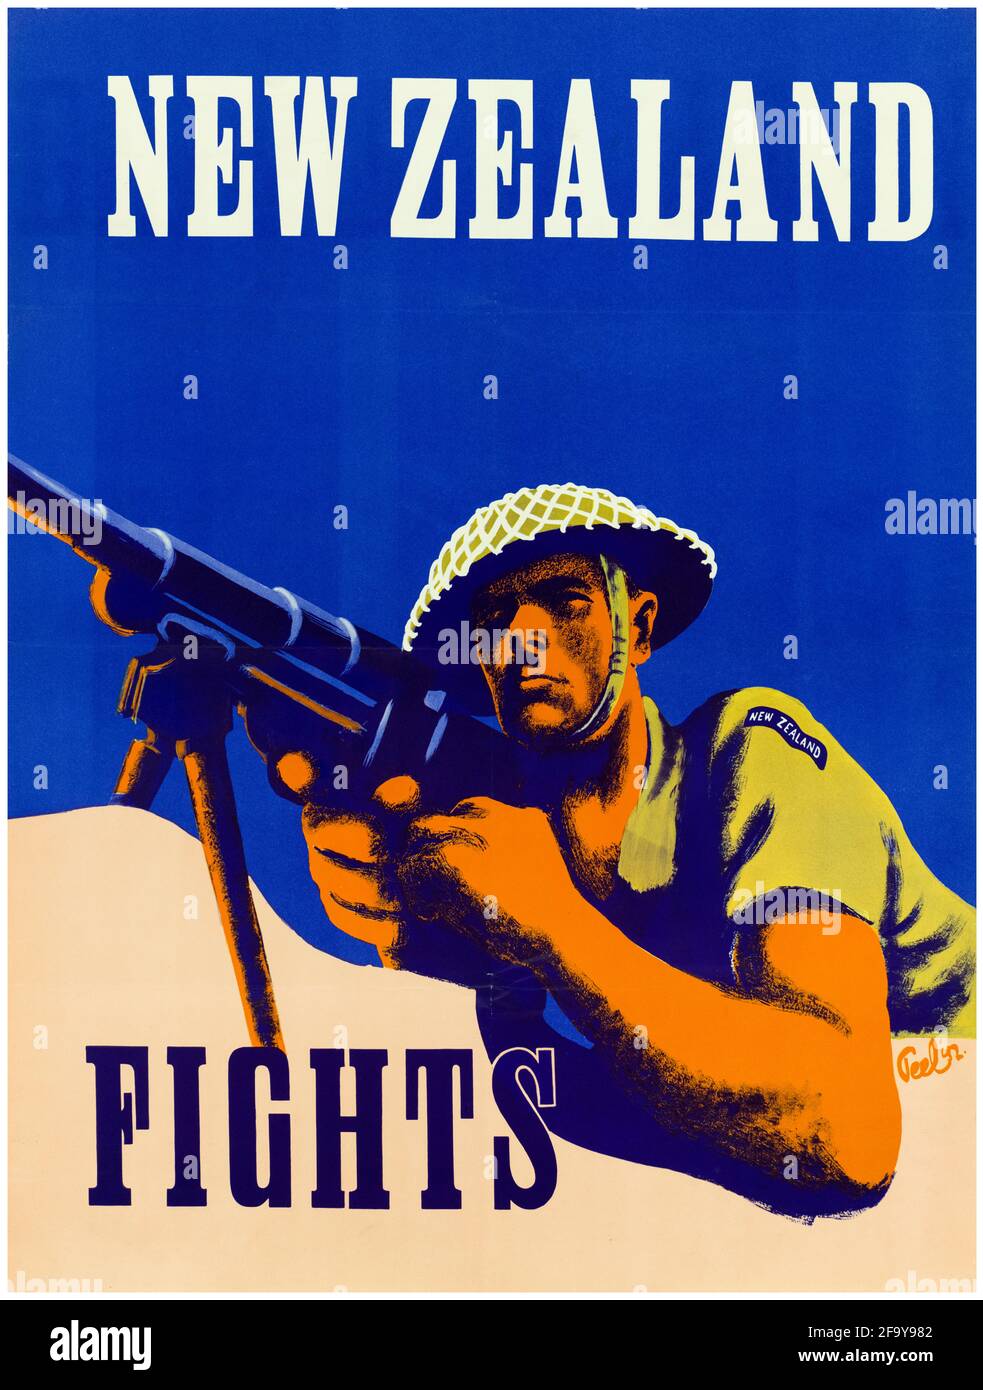 New Zealand, poster motivazionale della seconda guerra mondiale, New Zealand Fights, 1942-1945 Foto Stock